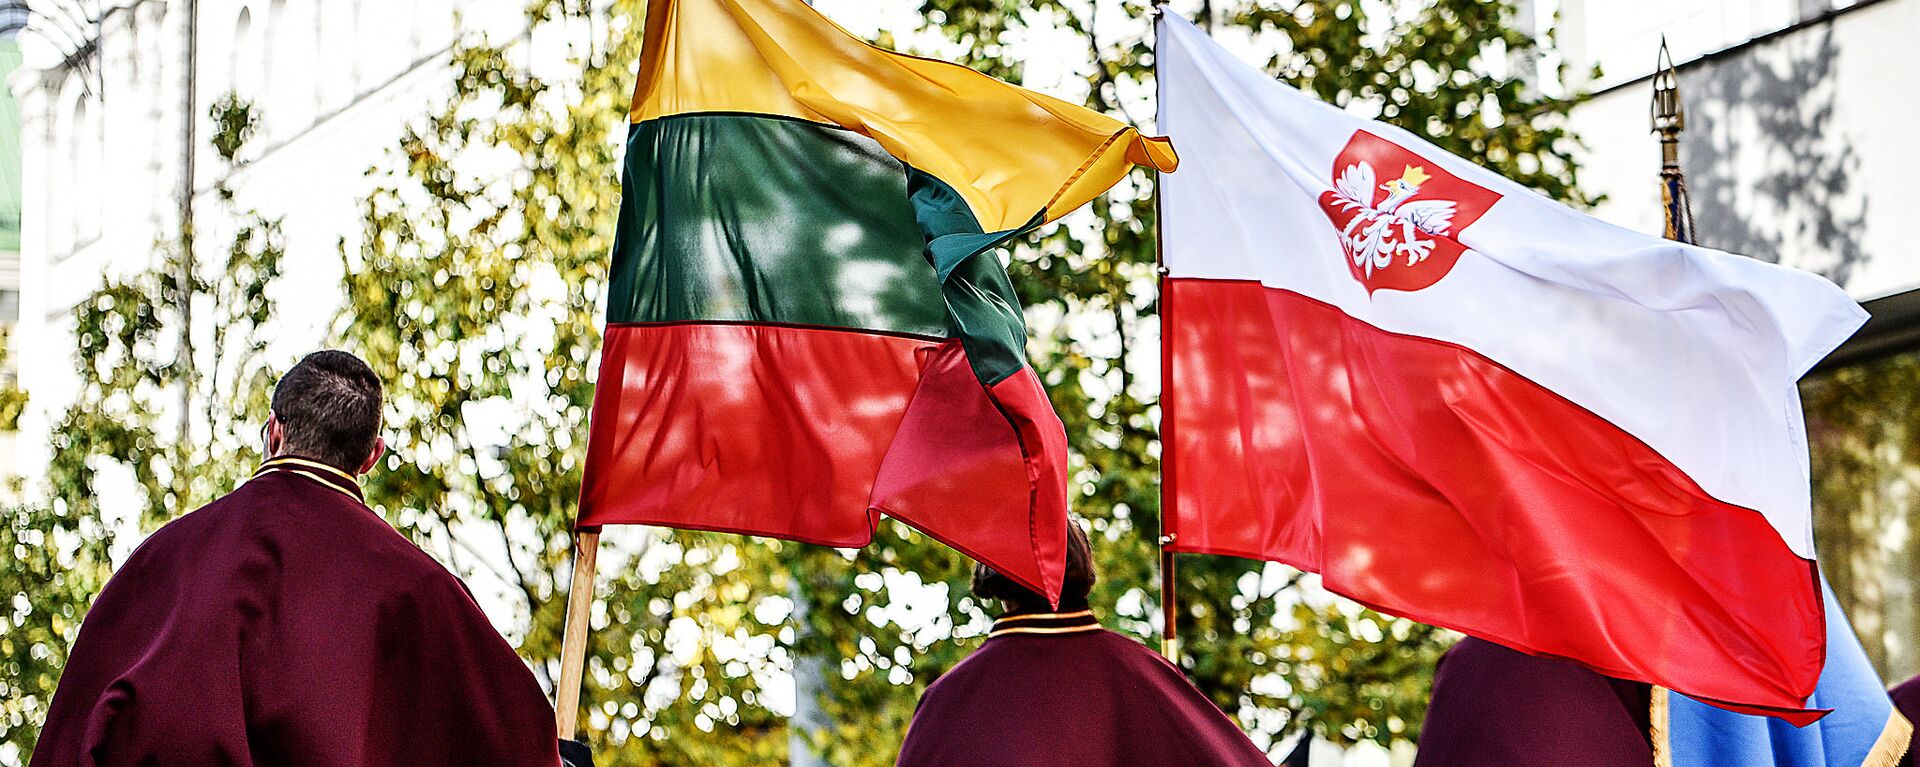 Флаги Литвы и Польши, архивное фото - Sputnik Литва, 1920, 07.08.2021